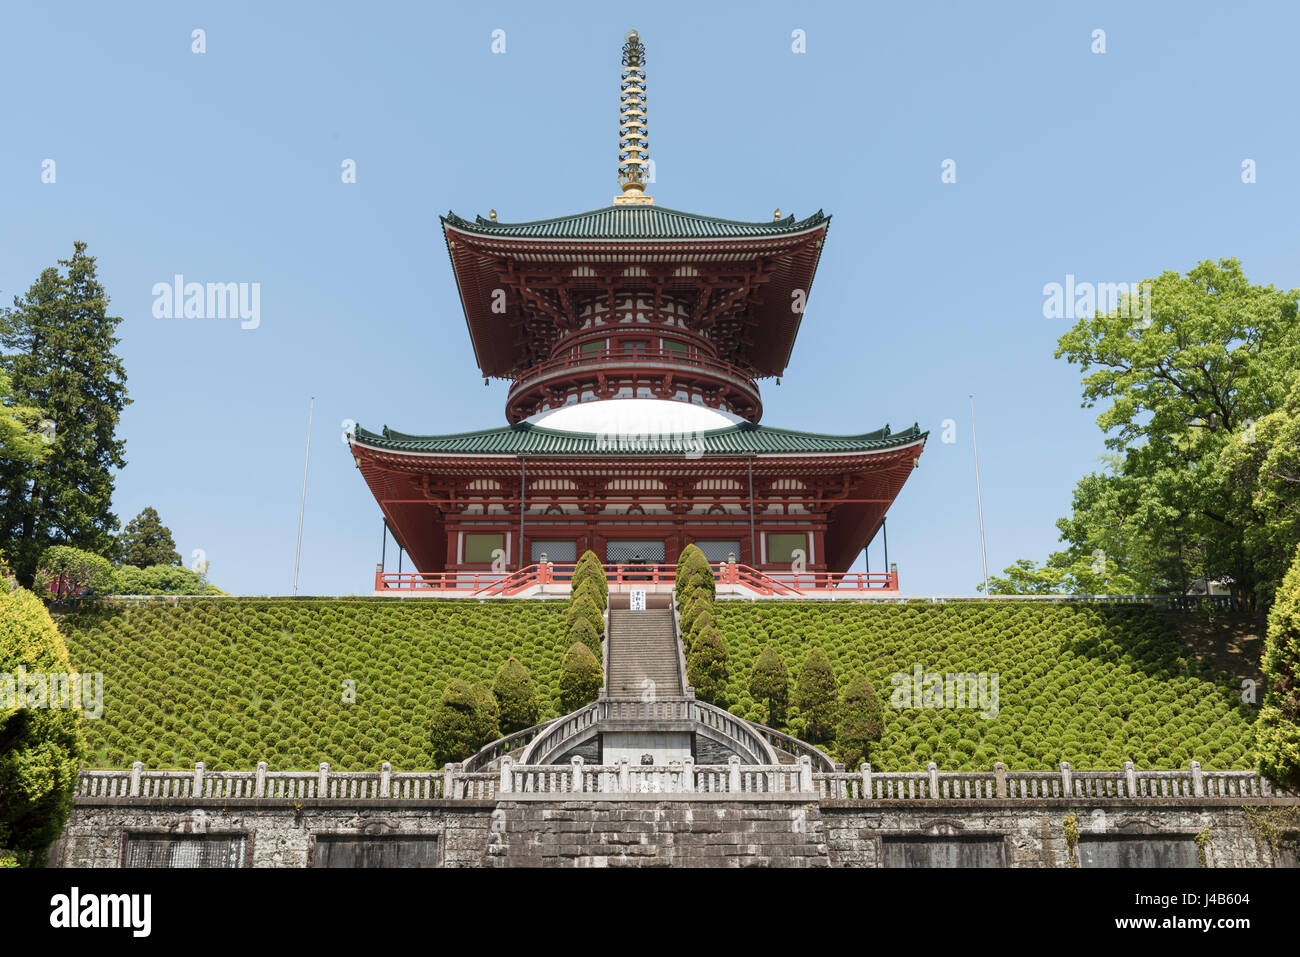 Grande Pagode de la paix à Naritasan Shinshoji temple de Narita, au Japon. Fait partie du Temple de la secte Shingon Chisan du bouddhisme Banque D'Images